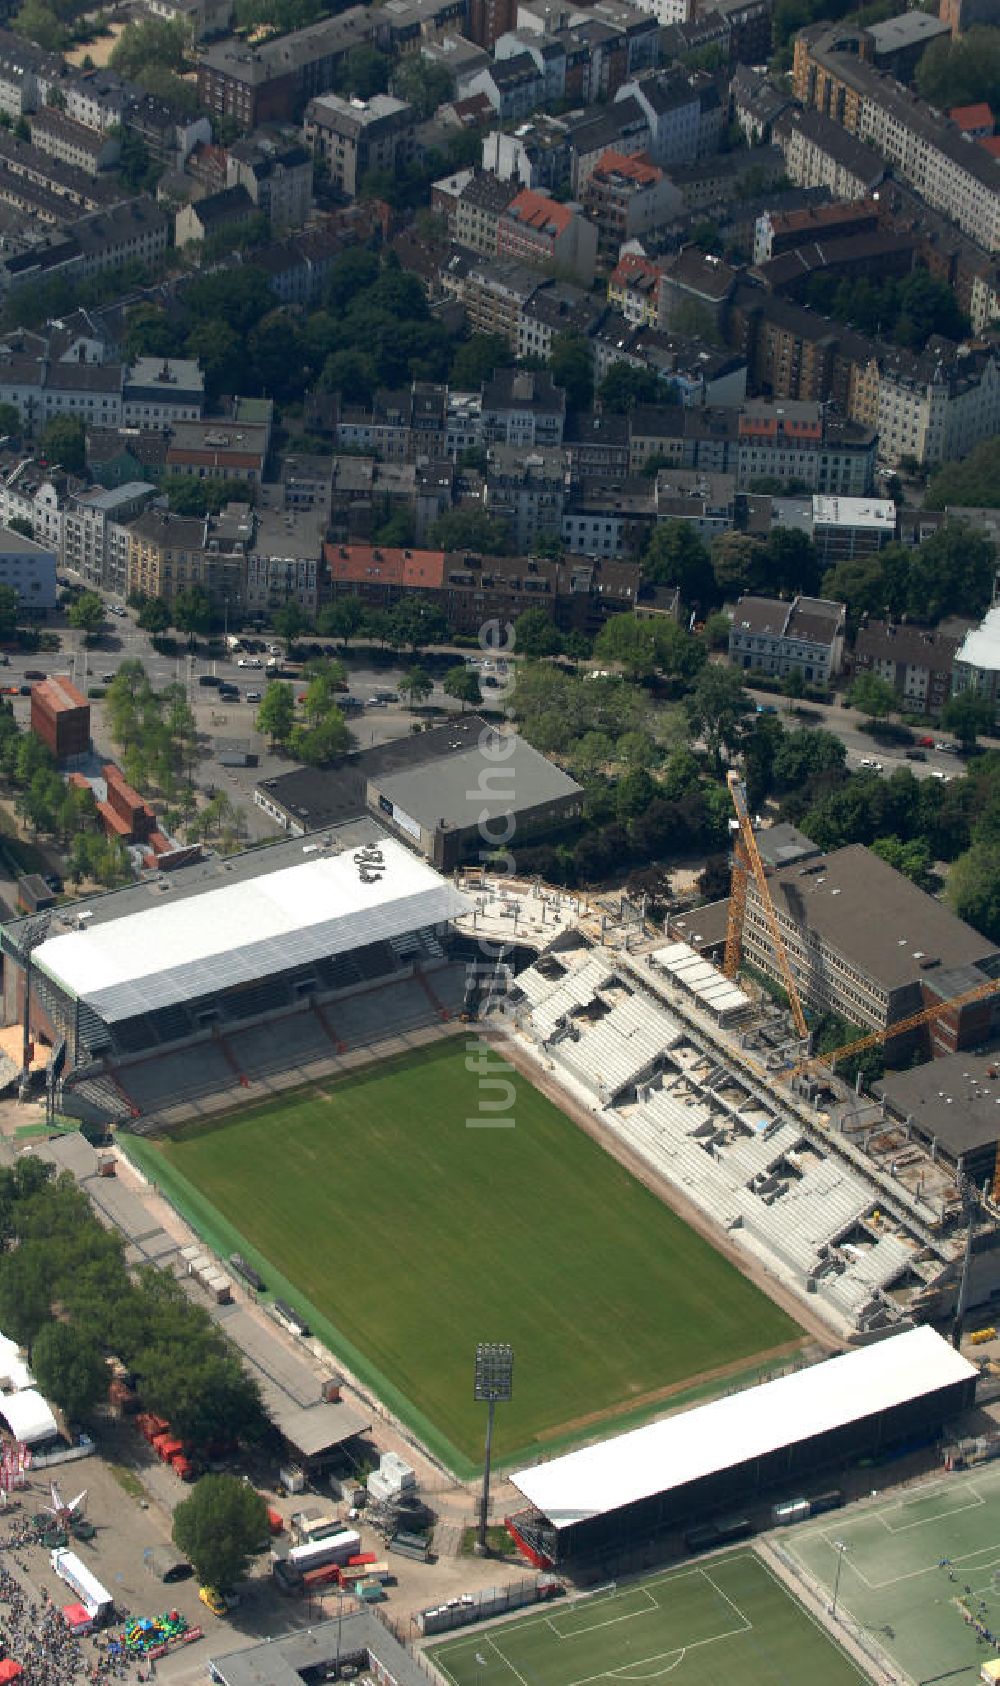 Luftaufnahme Hamburg - Millerntor-Stadion / St. Pauli Stadion in Hamburg